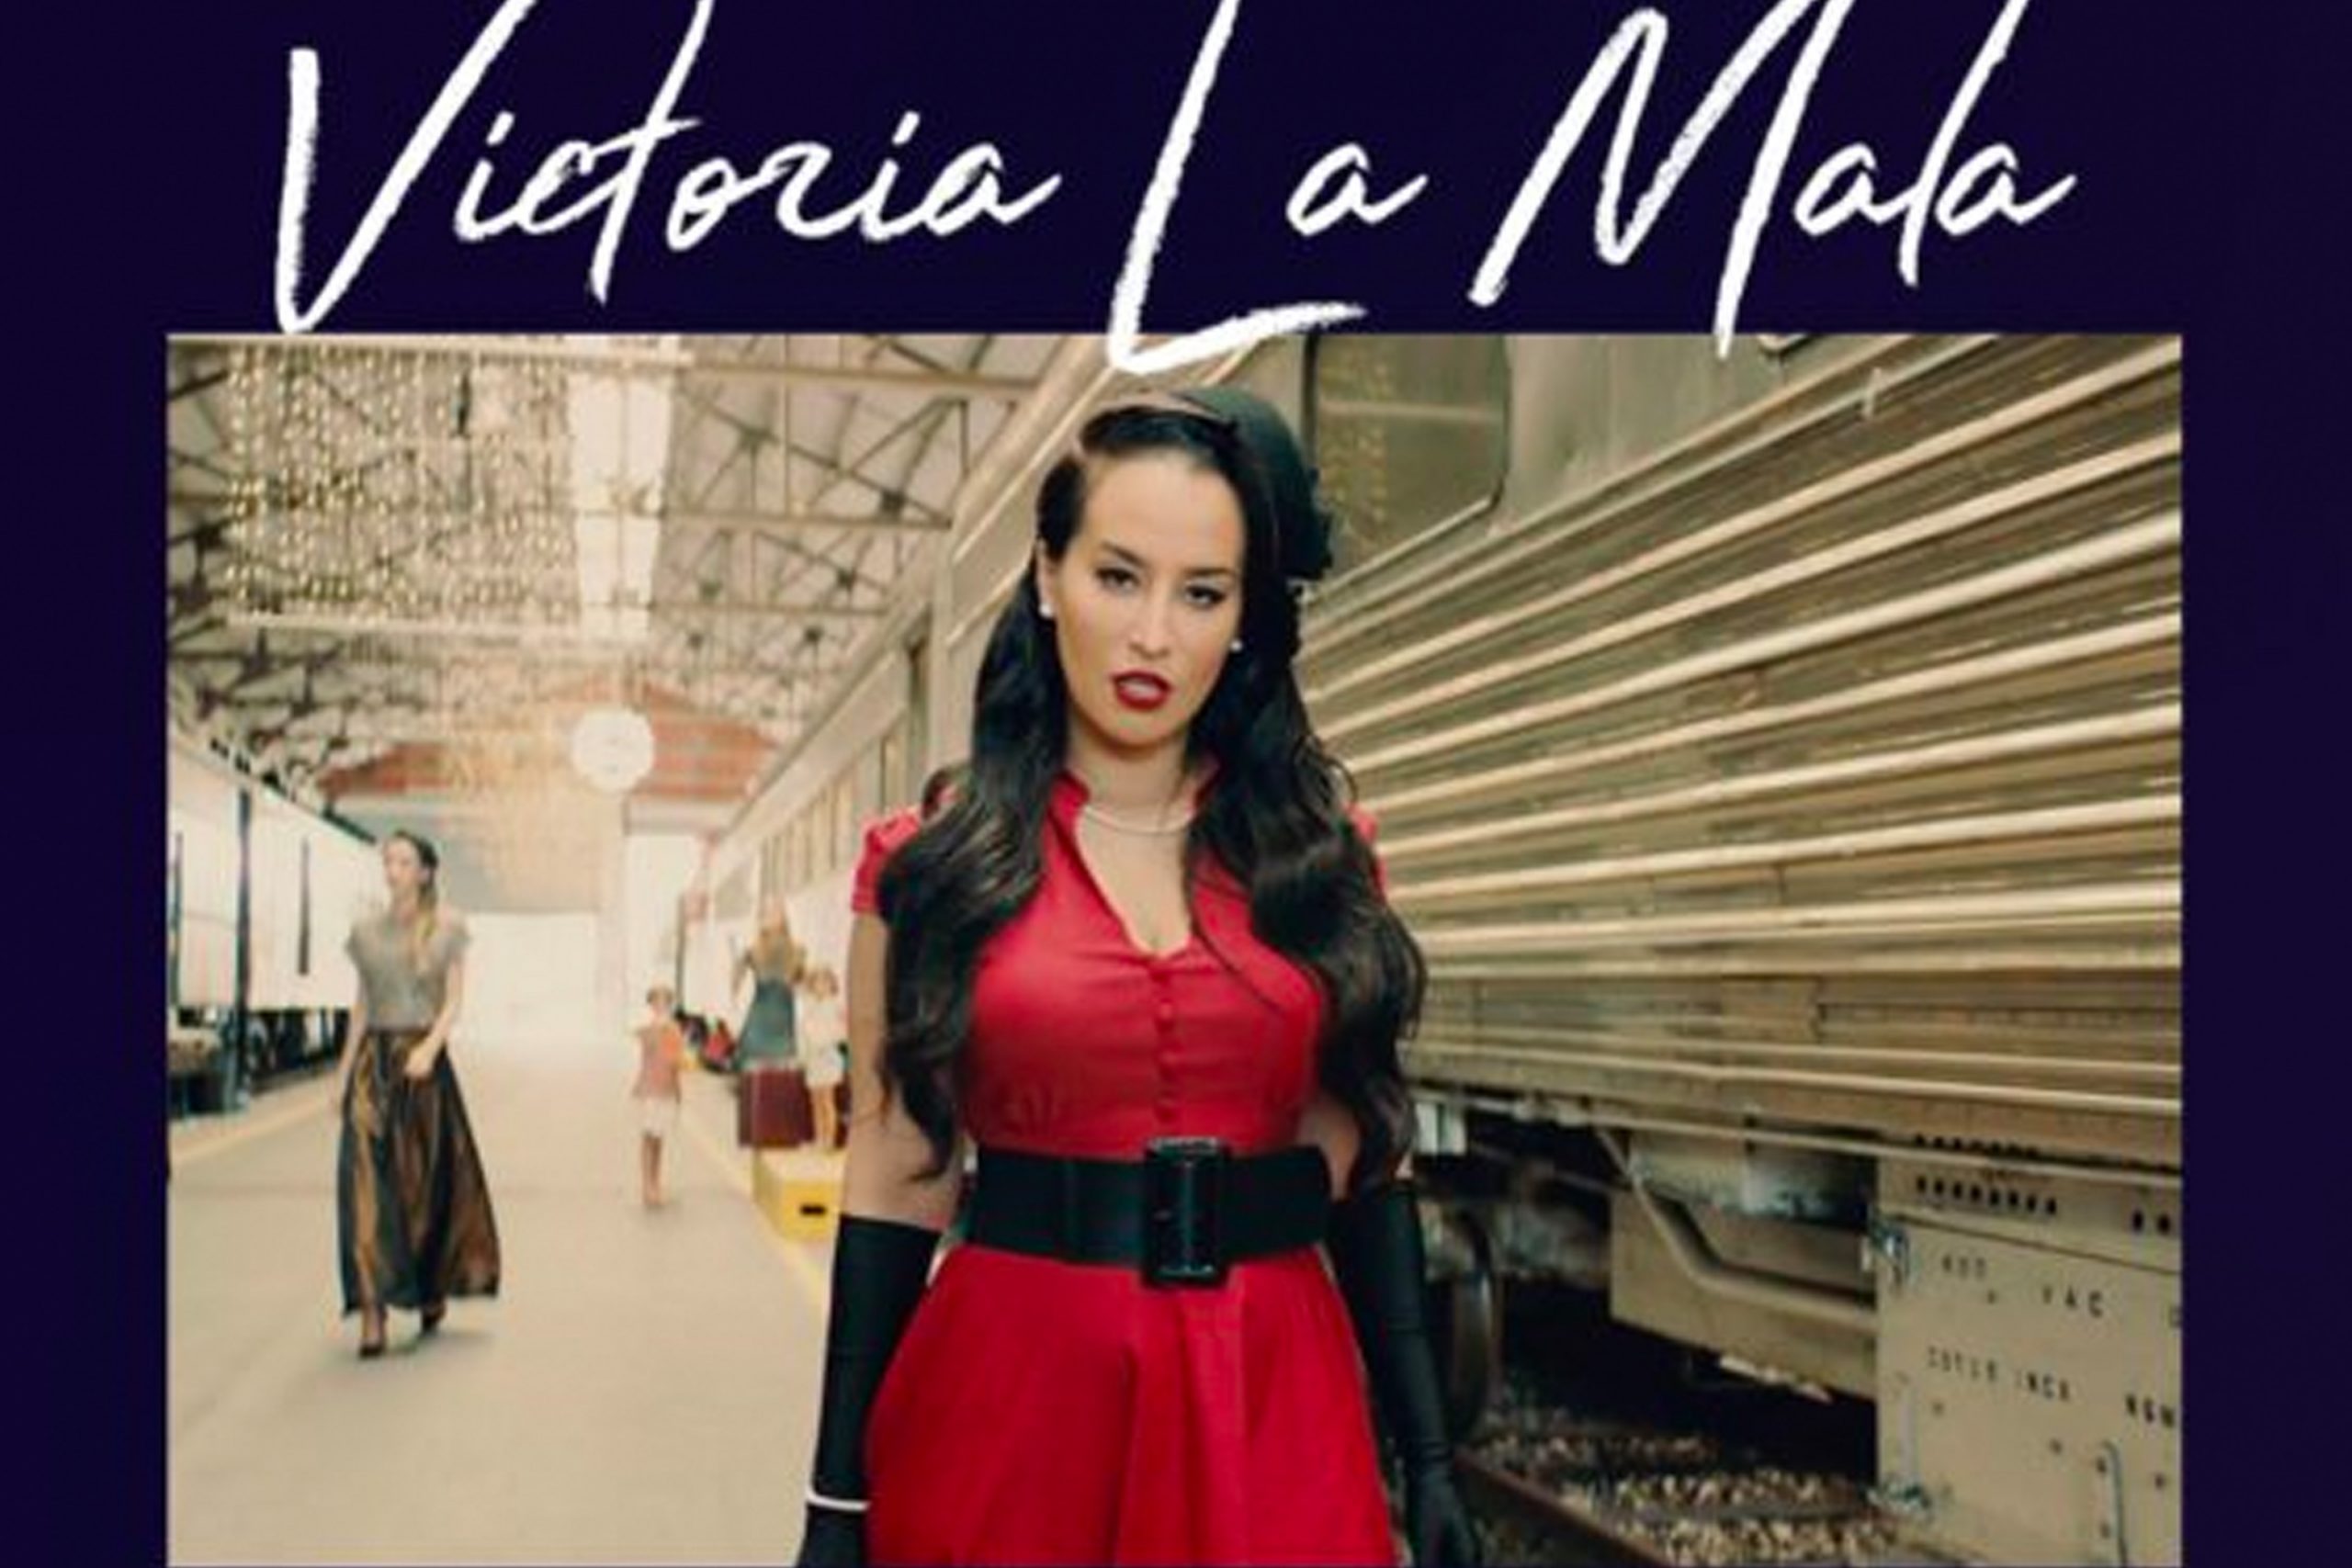 Victoria La Mala Album cover